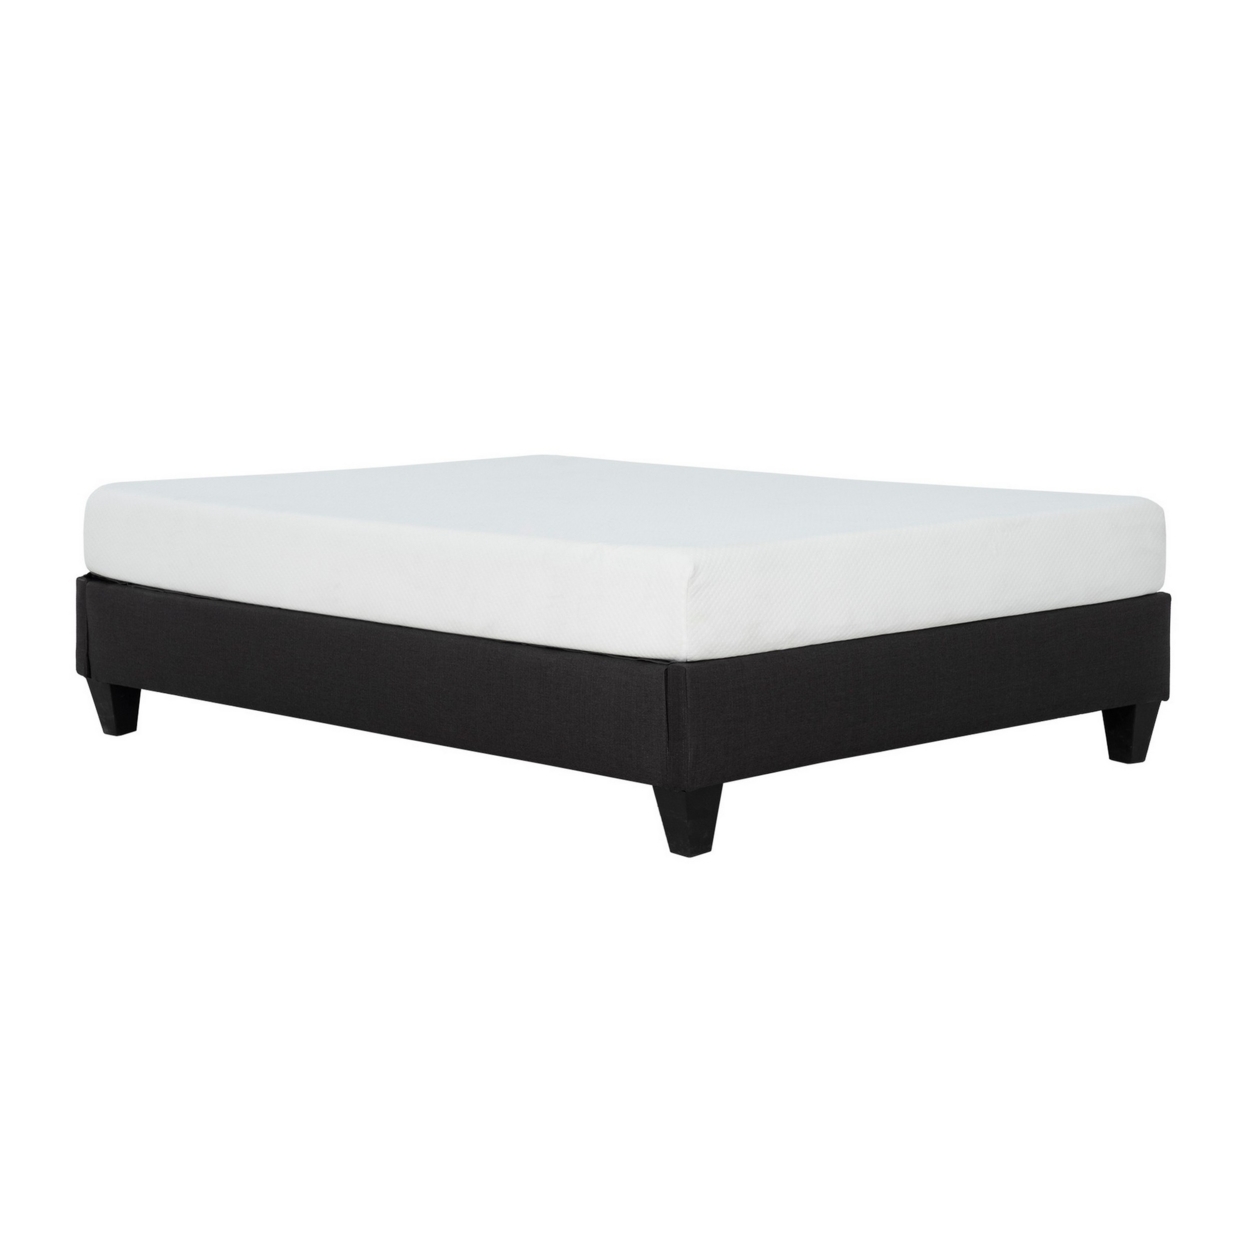 Cleo Full Size Bed Frame, Solid Wood, Soft Dark Gray Linen Upholstery- Saltoro Sherpi